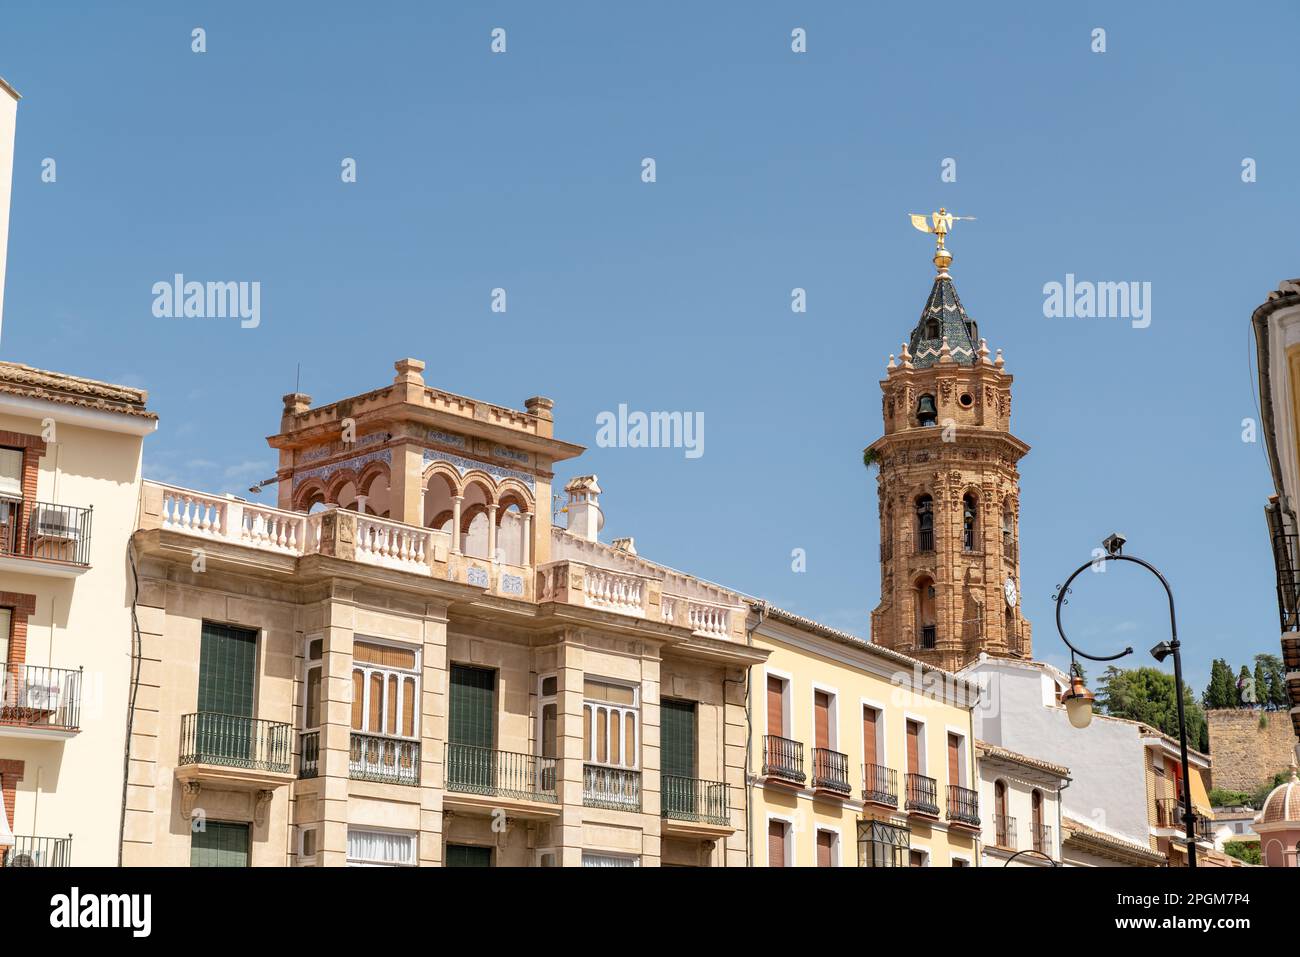 Stadtzentrum der wunderschönen spanischen Stadt Antequera. Touristisches Reiseziel in Andalucía. Historische und mittelalterliche Stadt mit wunderschöner Architektur. Stockfoto